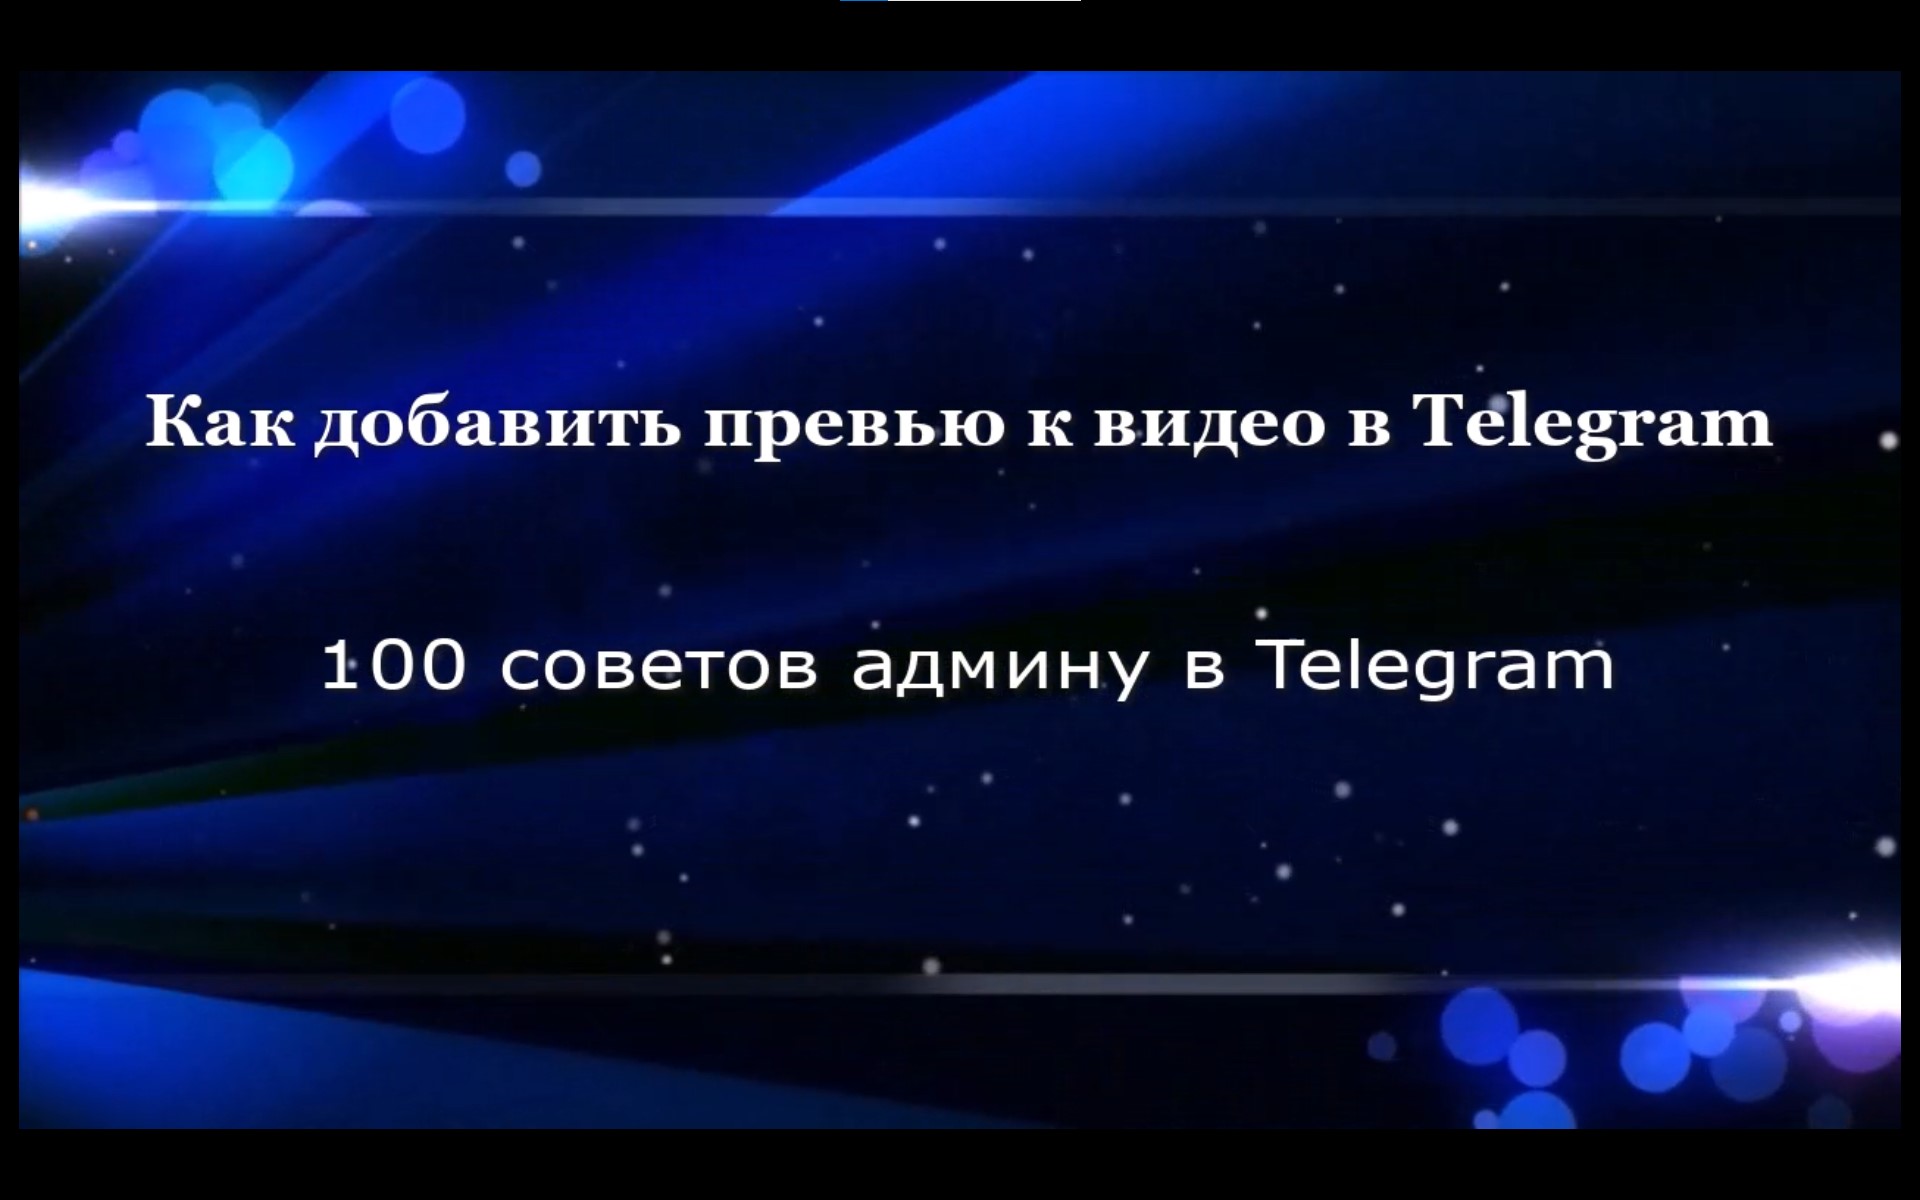 Смотреть видео телеграмм онлайн фото 6